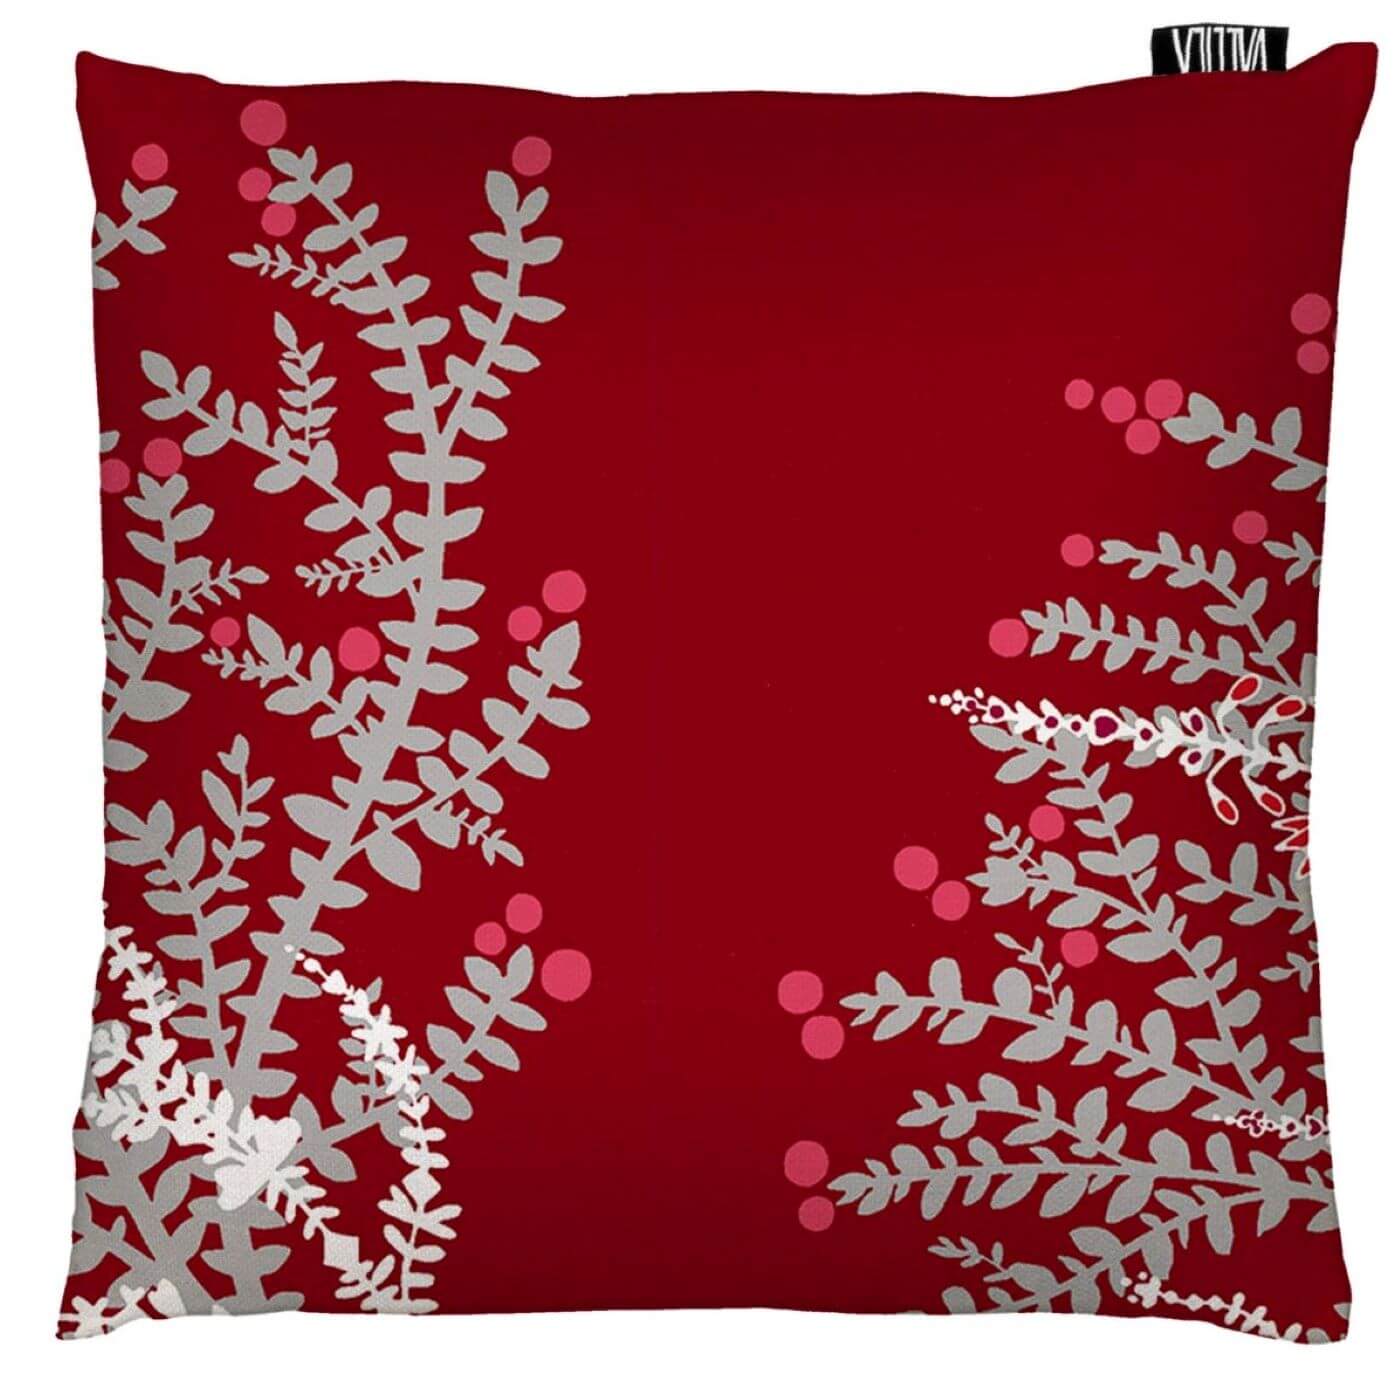 Czerwona poszewka dekoracyjna VARVIKKO. Powiększony widok poszewki czerwonej na poduszkę z dekoracyjnym srebrno białym stylizowanym wzorem roślin skandynawskich lasów. Skandynawski design